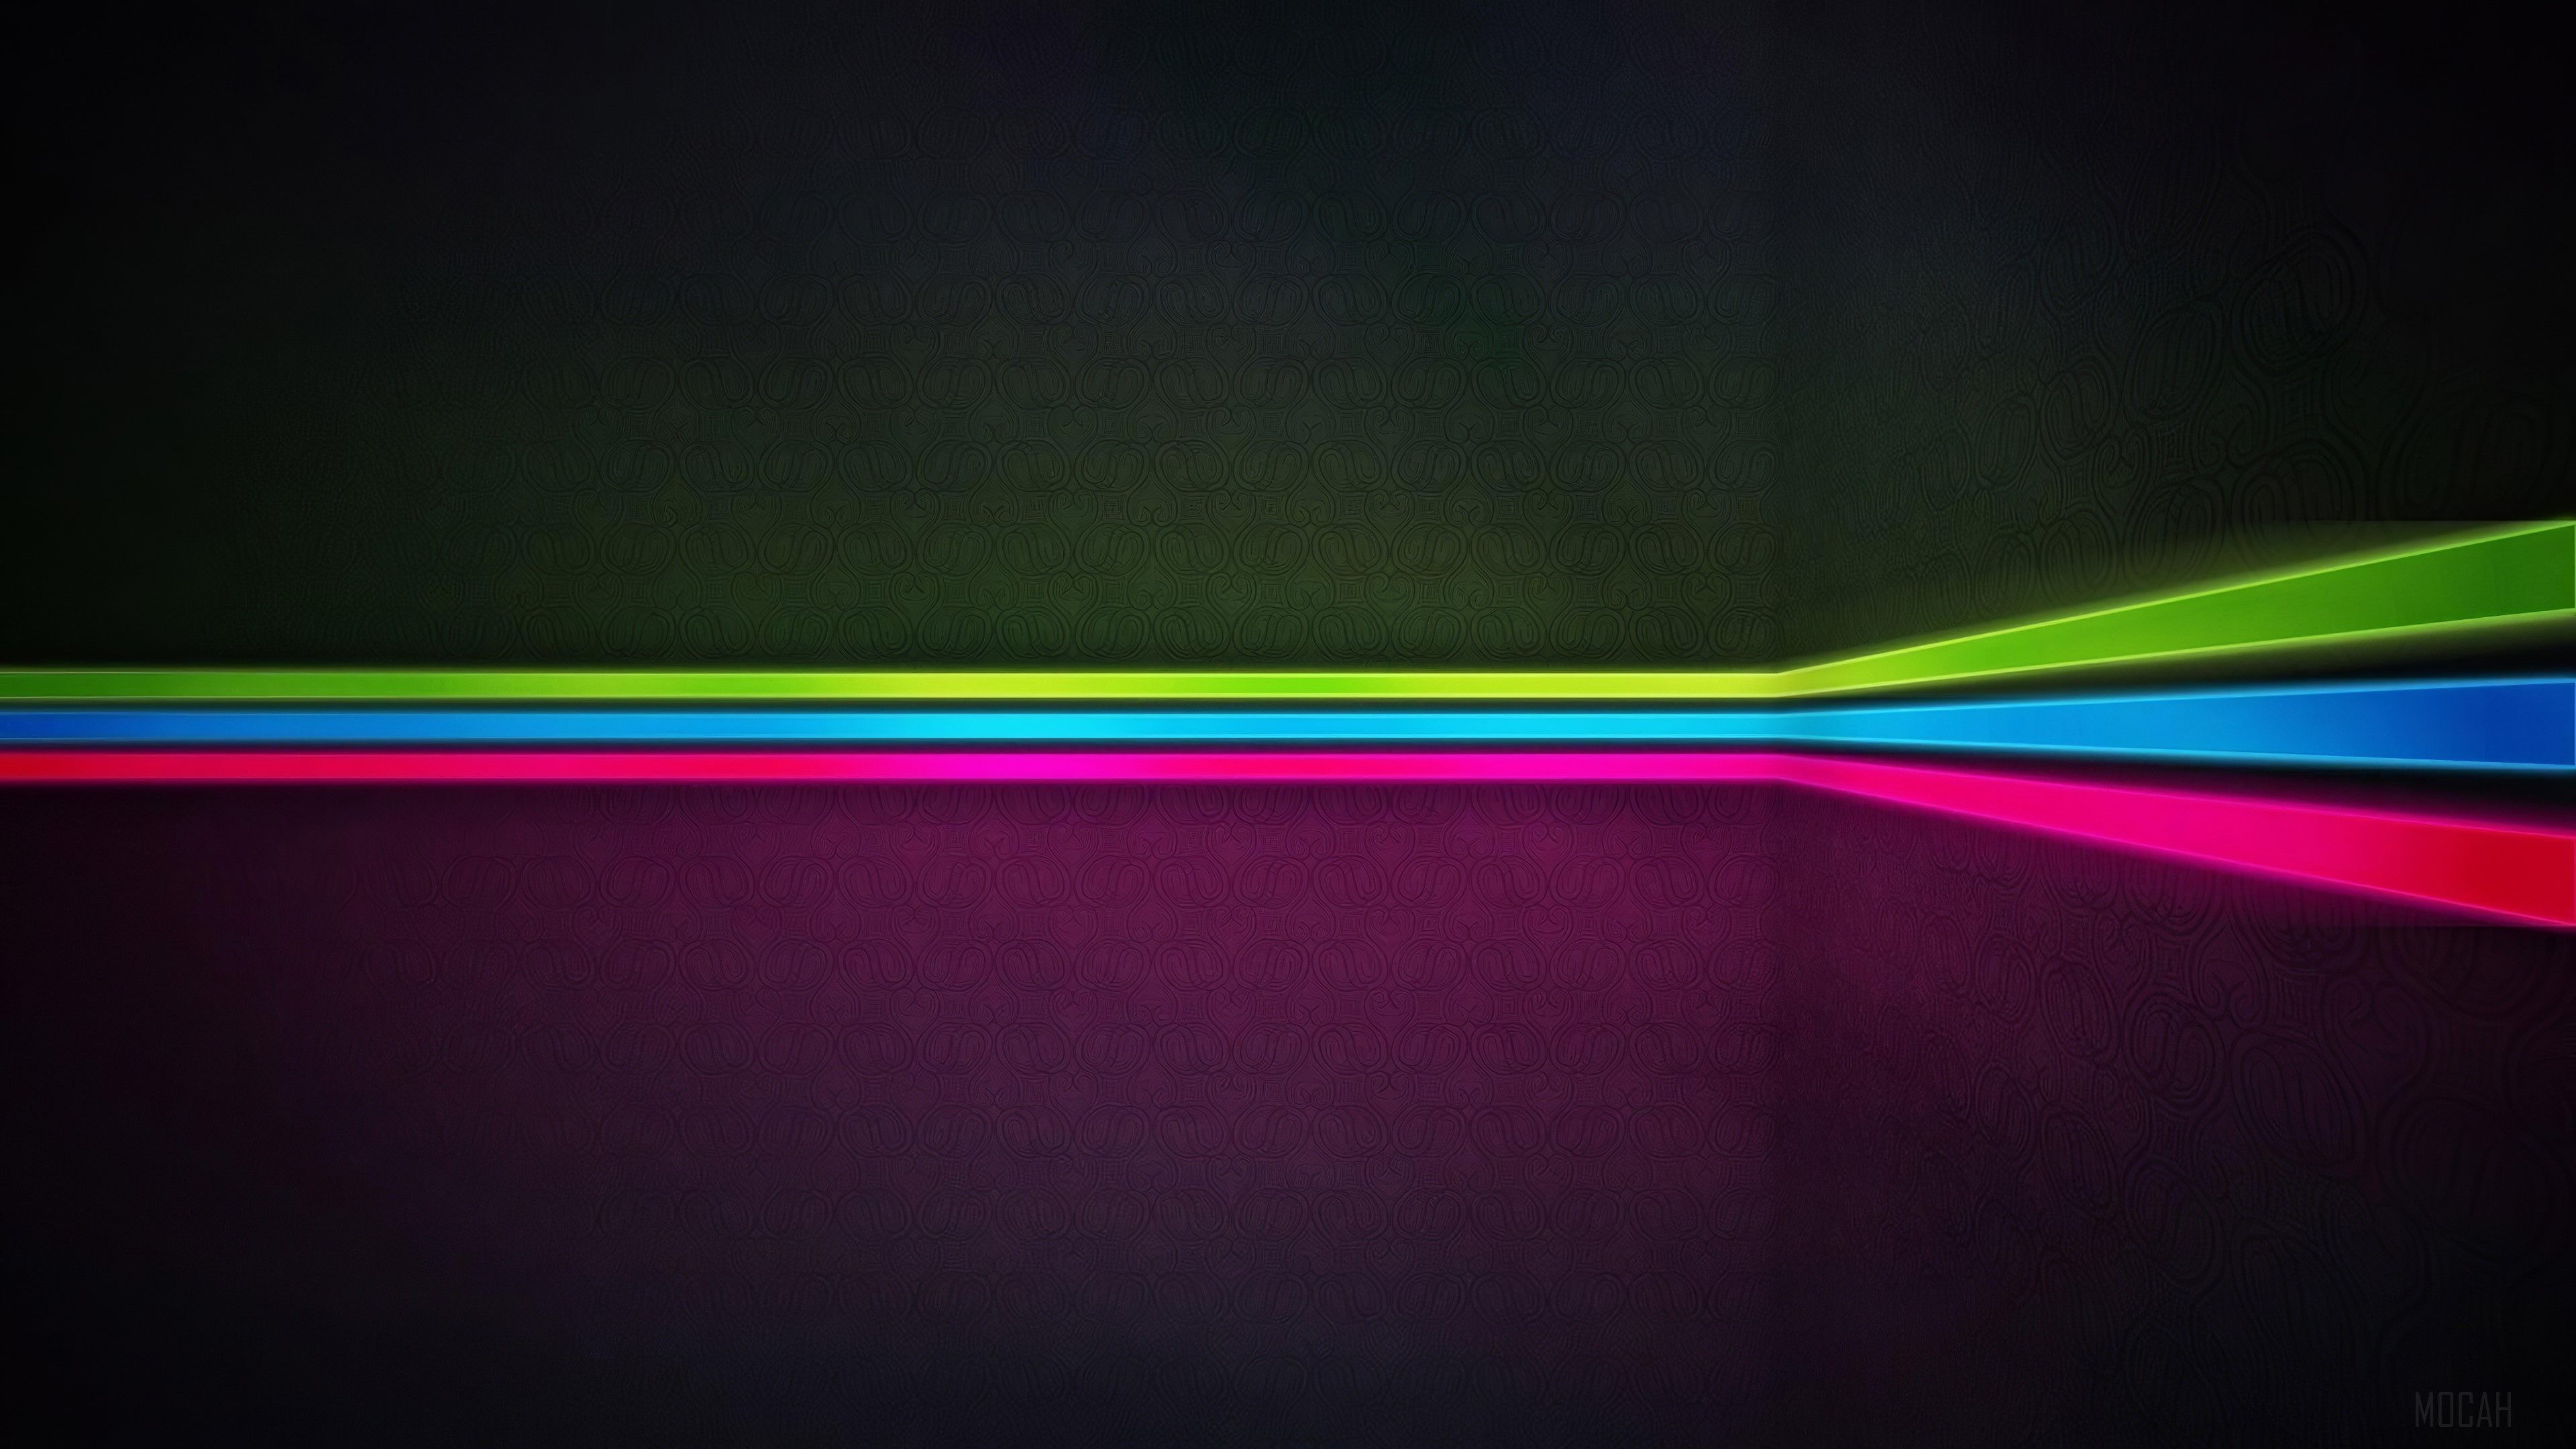  Neon 4k Hintergrundbild 3840x2160. Neon Stripes Wall 4k Gallery HD Wallpaper